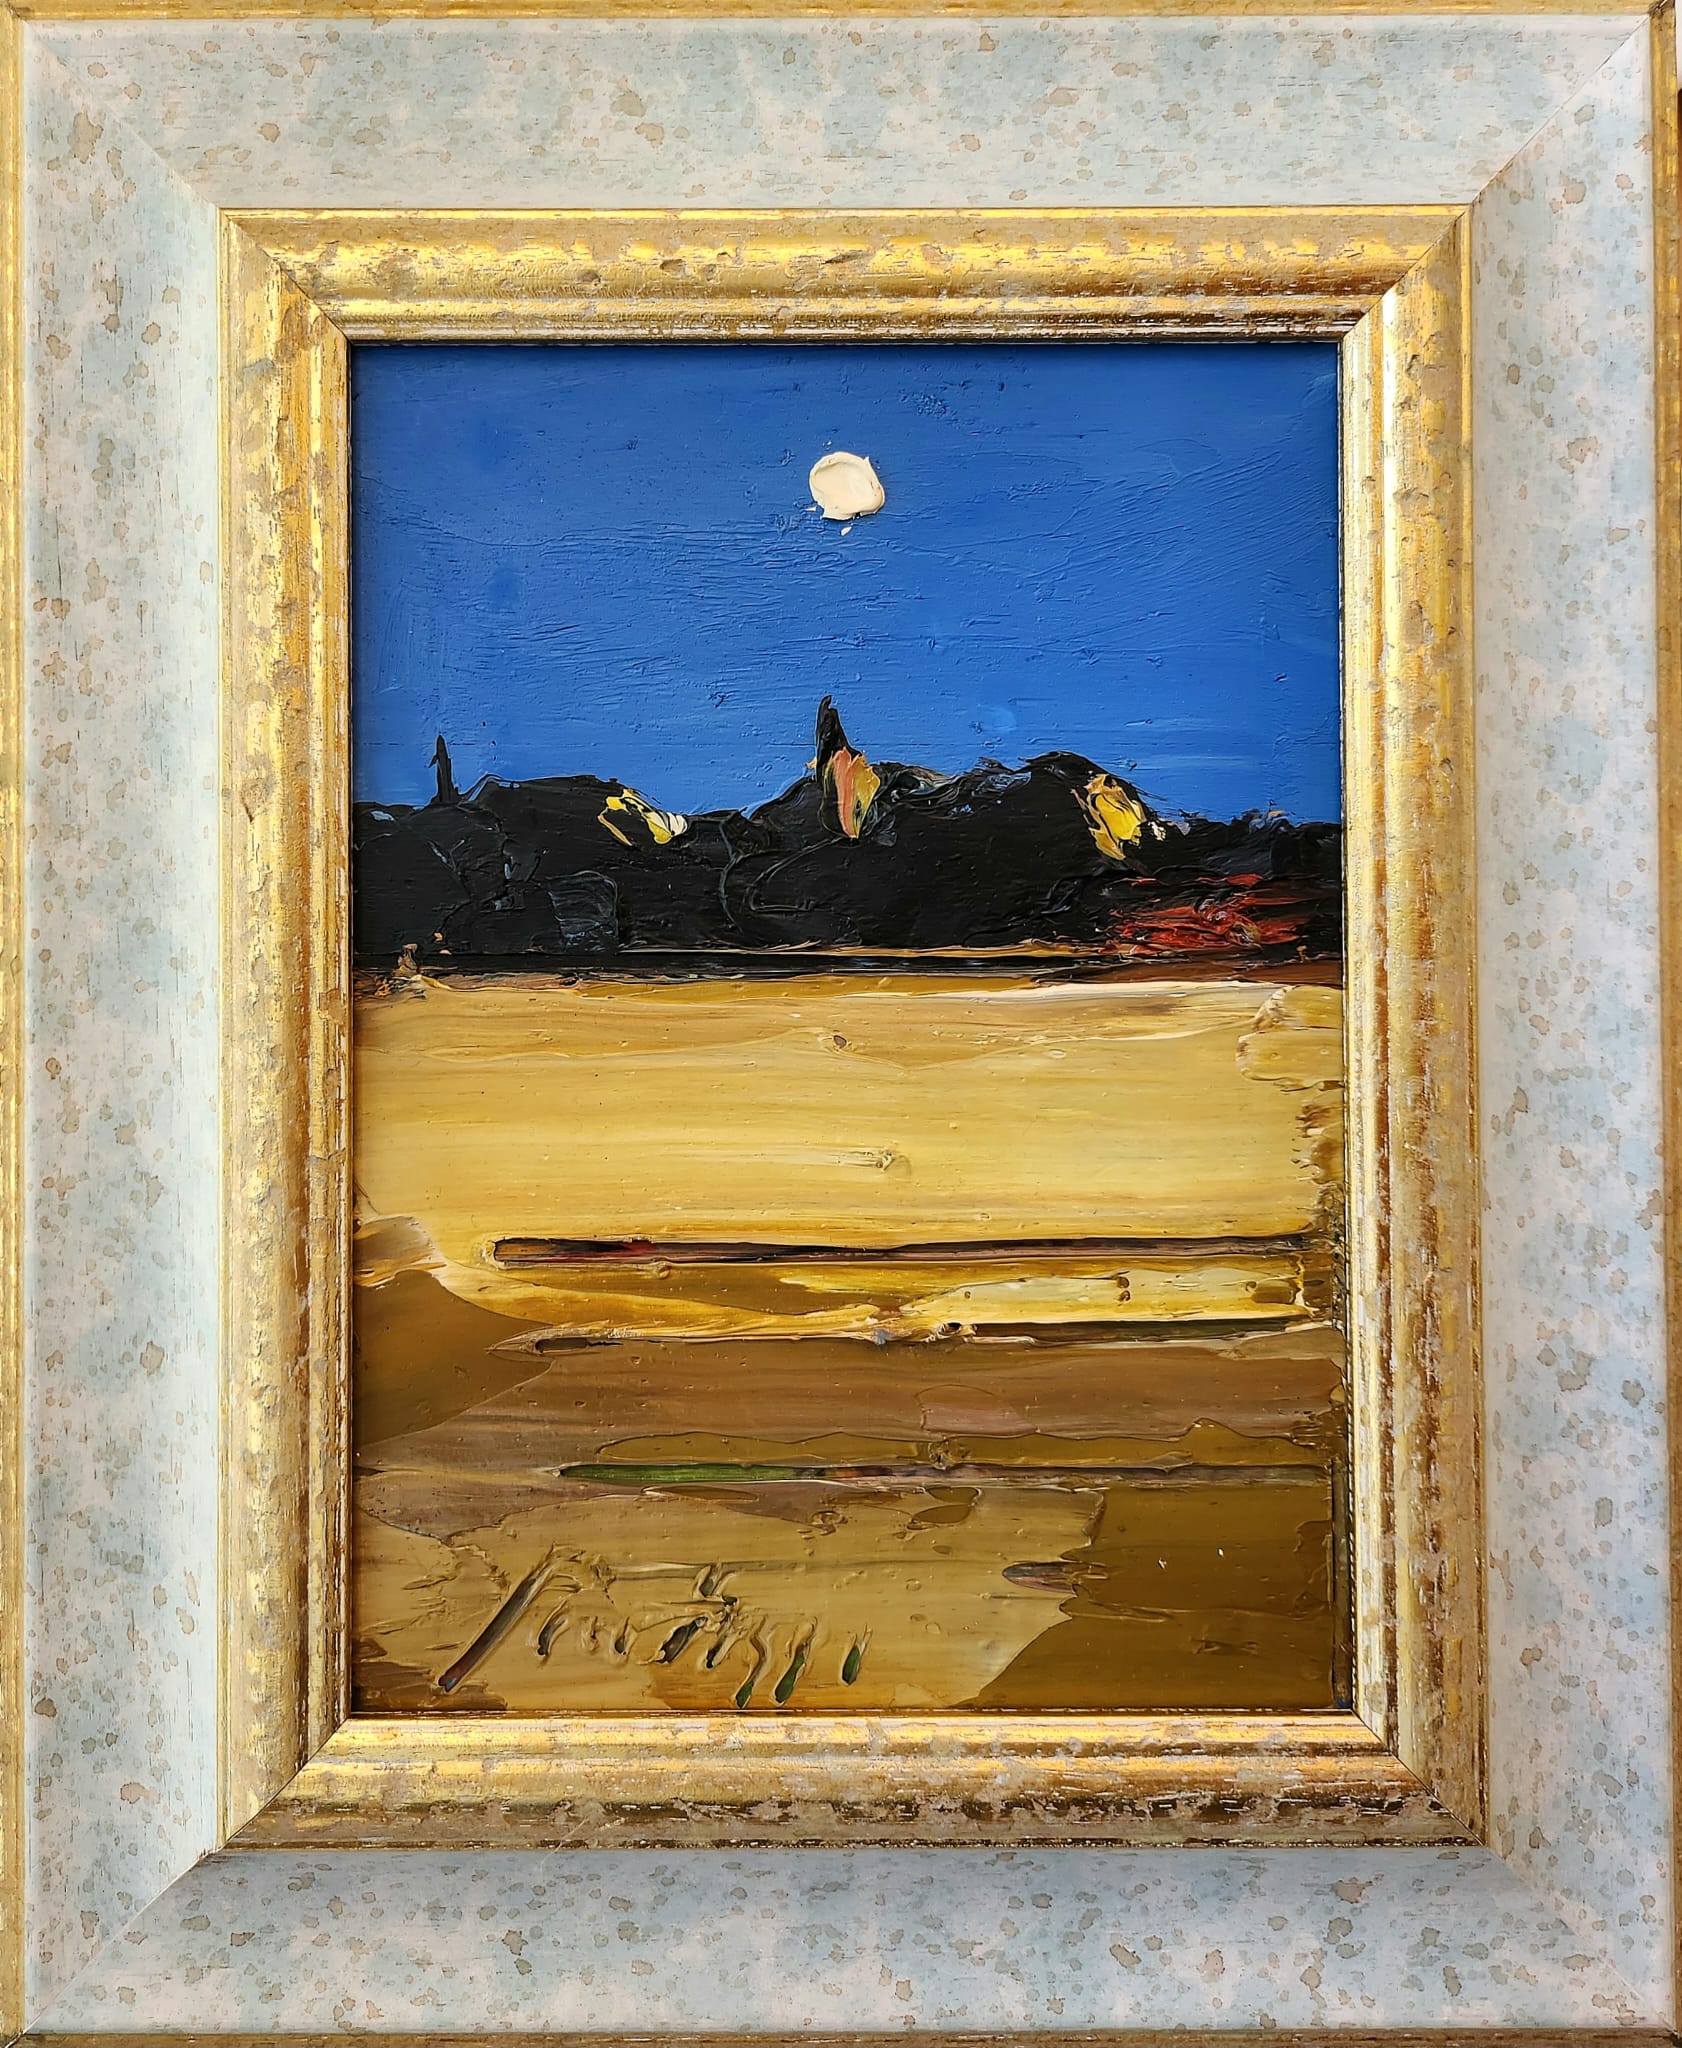 Sergio Scatizzi, Paesaggio con la luna, Olio su tavola, cm 24x17,5, 2002-2003